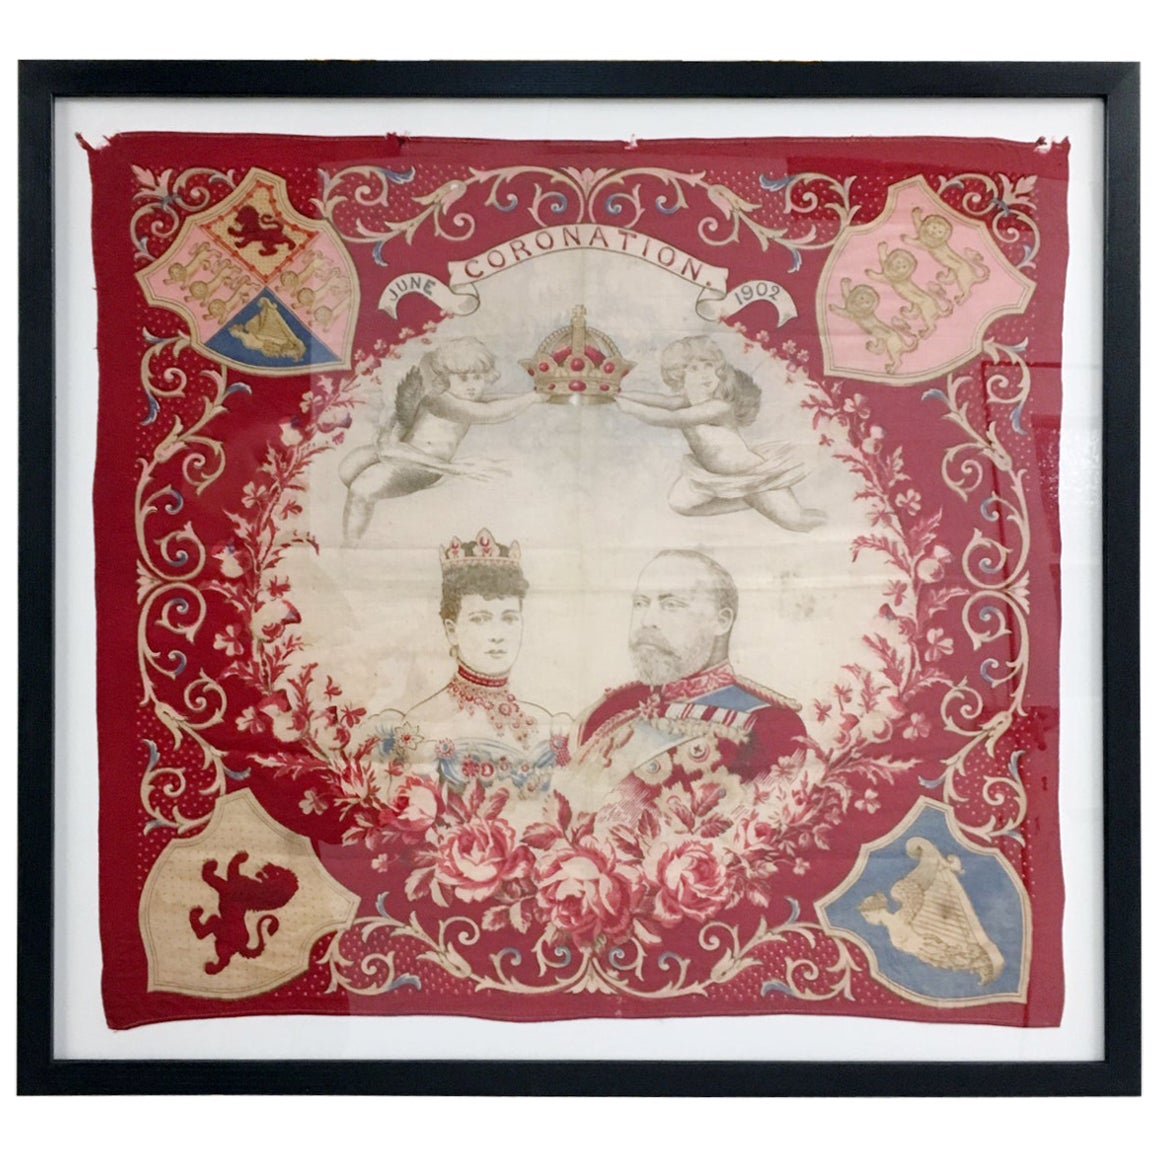 King Edward VII Coronation, June 1902 Framed Red Flag For Sale